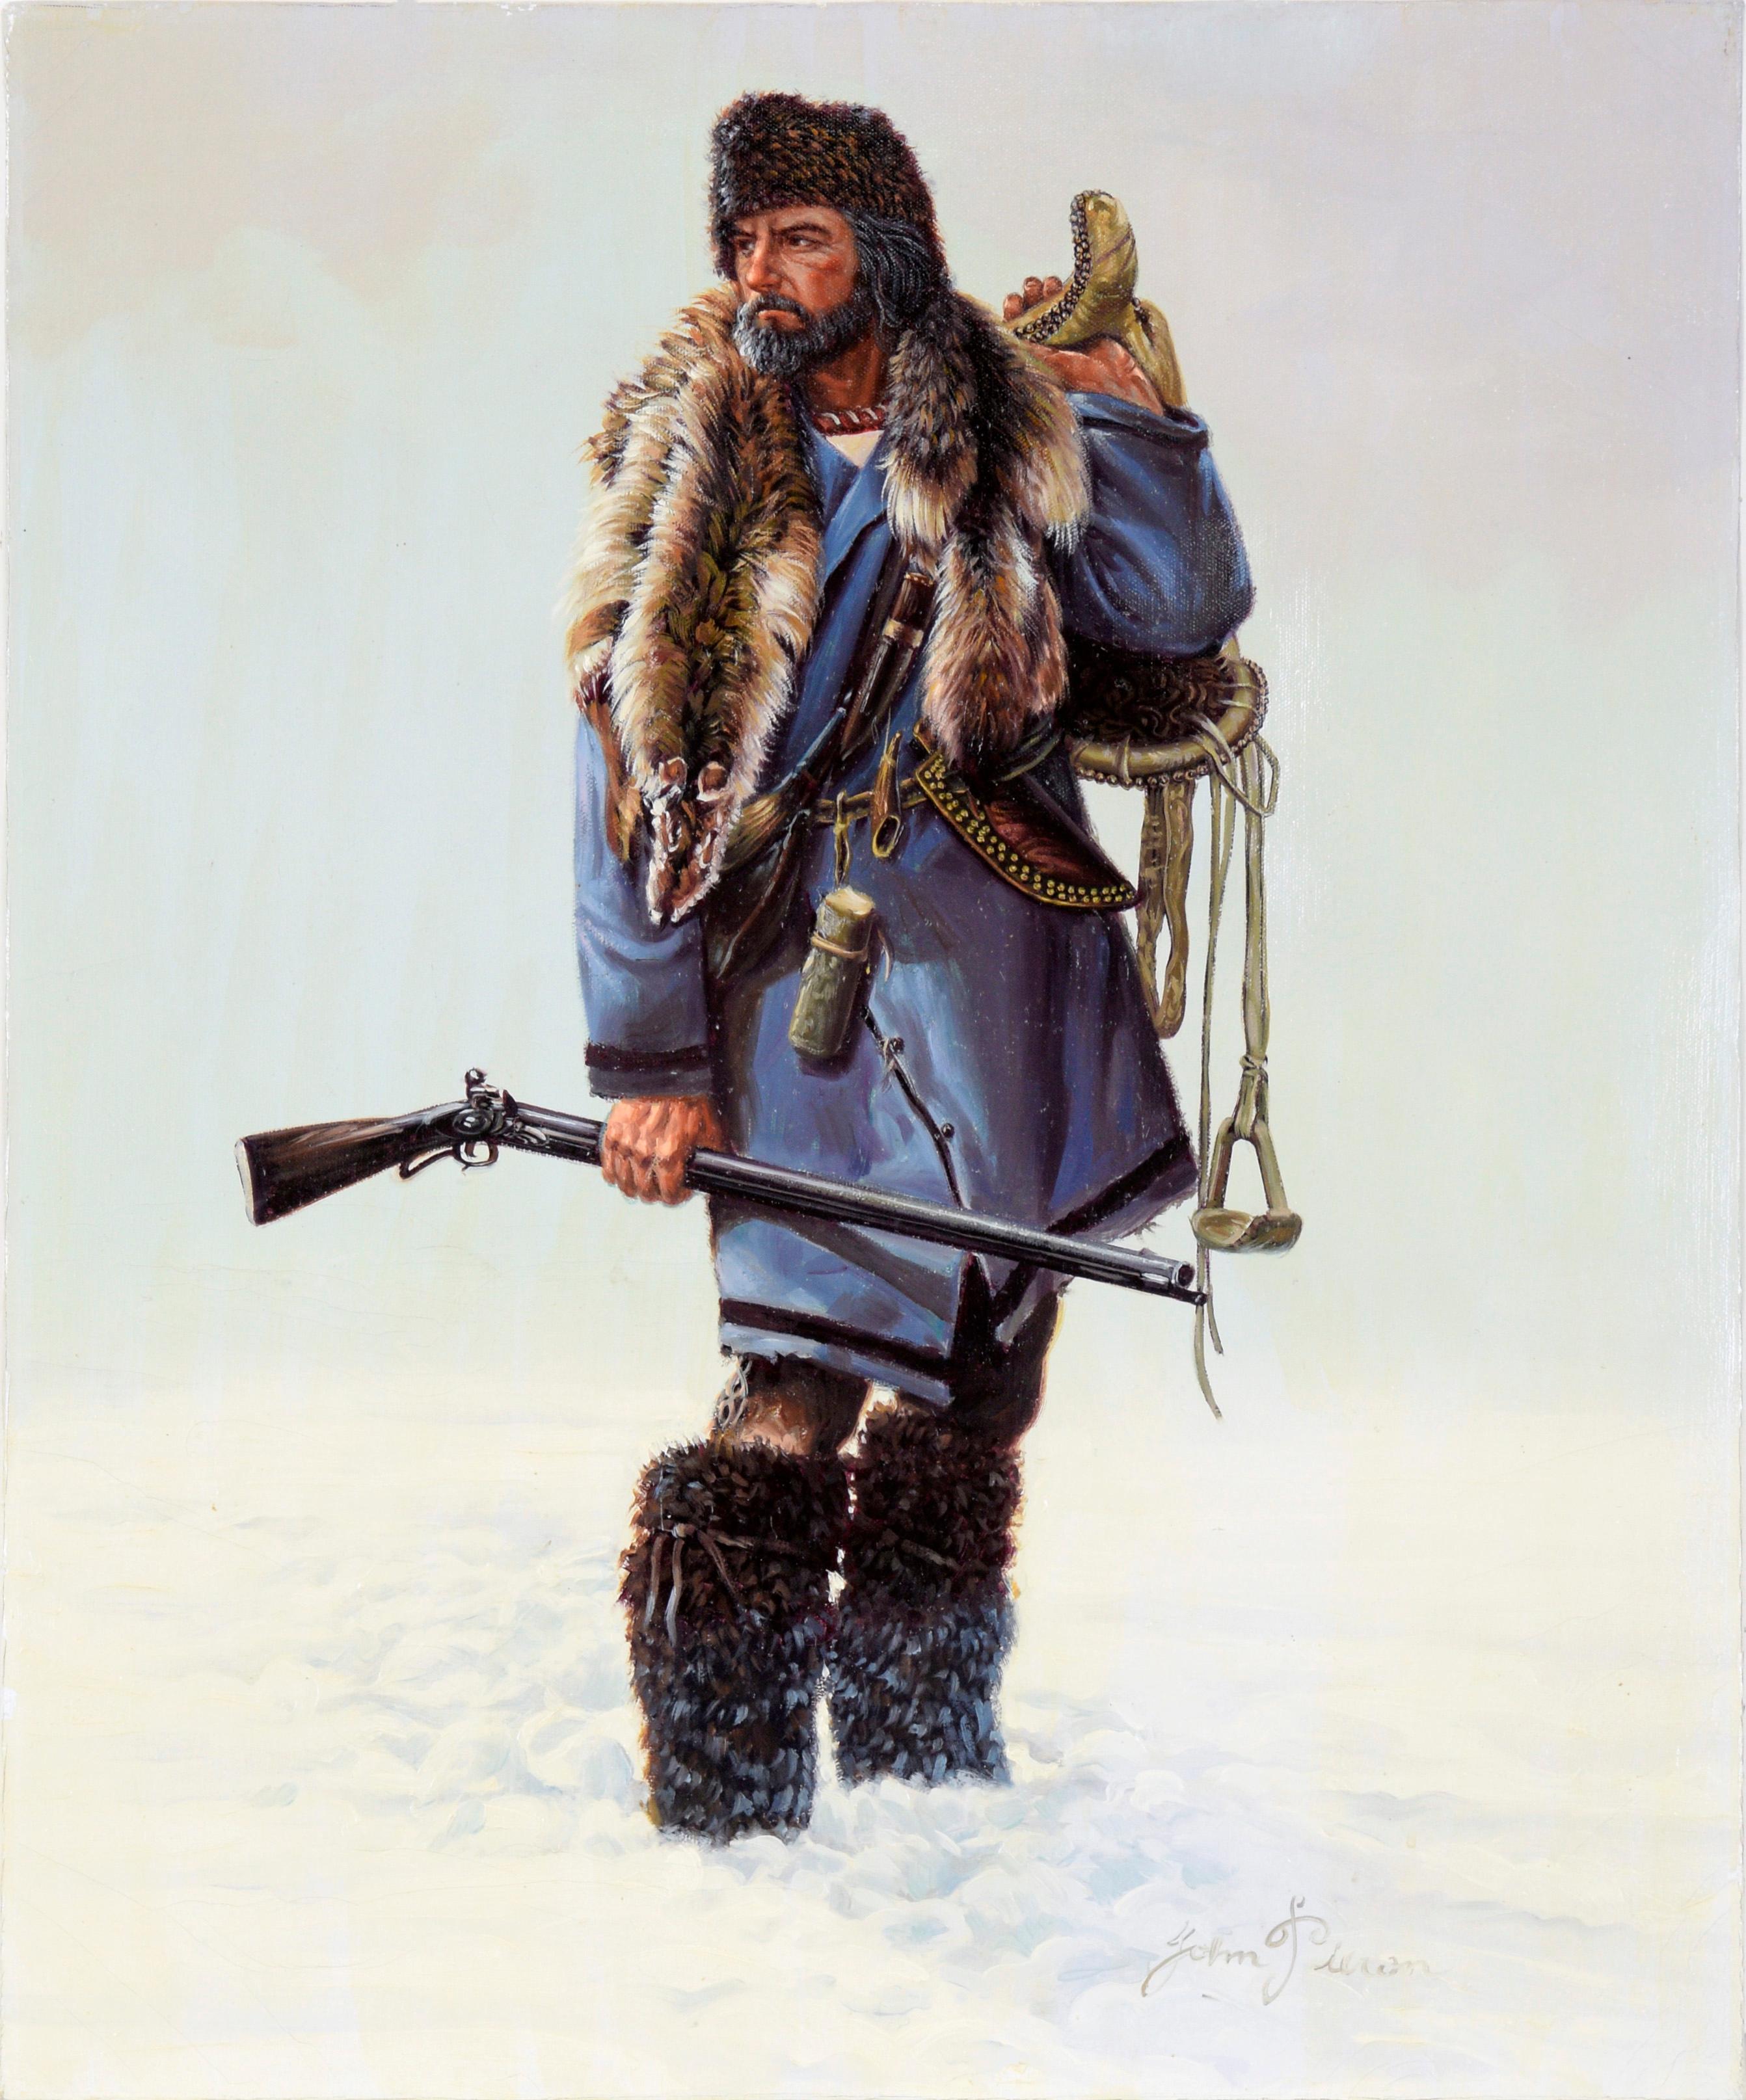 Portrait Painting John Pieron - Trappeur en hiver - Portrait à l'huile sur toile